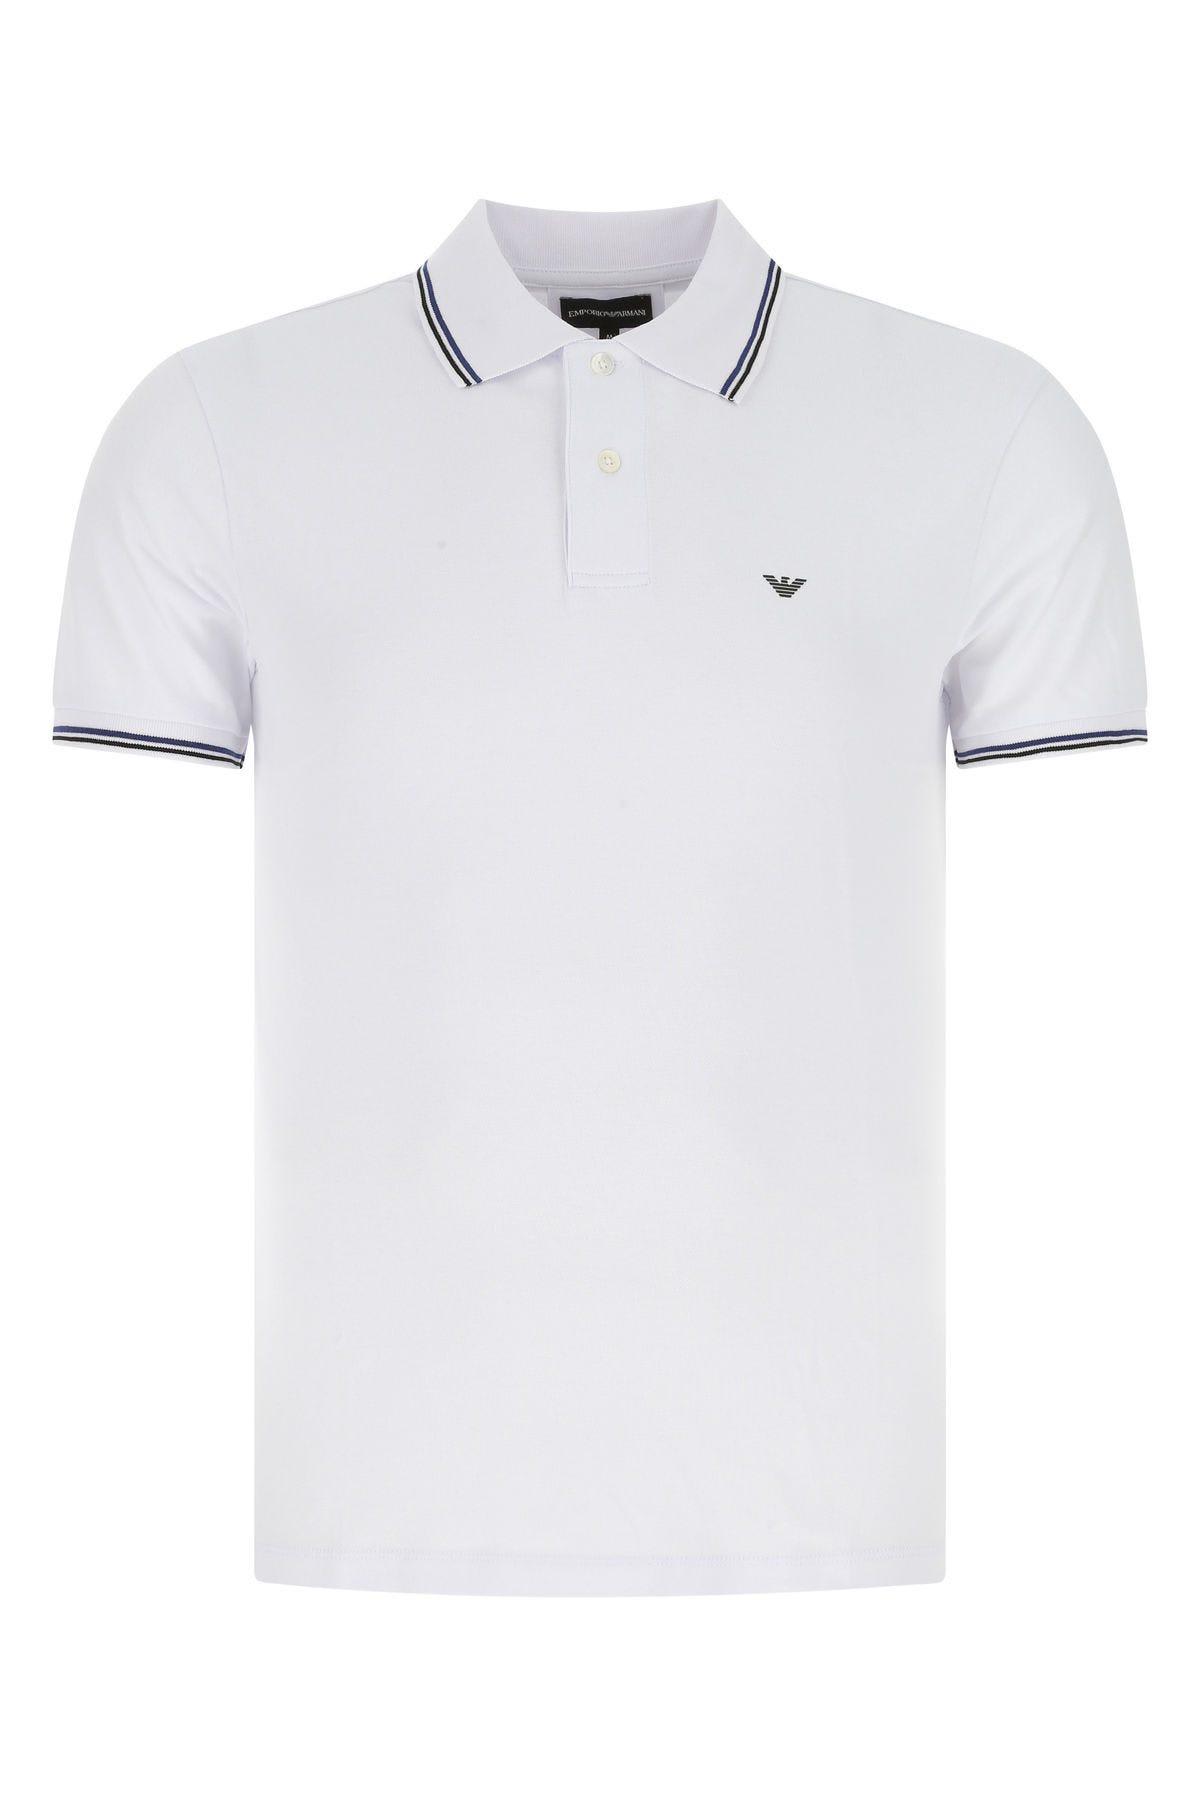 Emporio Armani White Stretch Cotton Polo Shirt